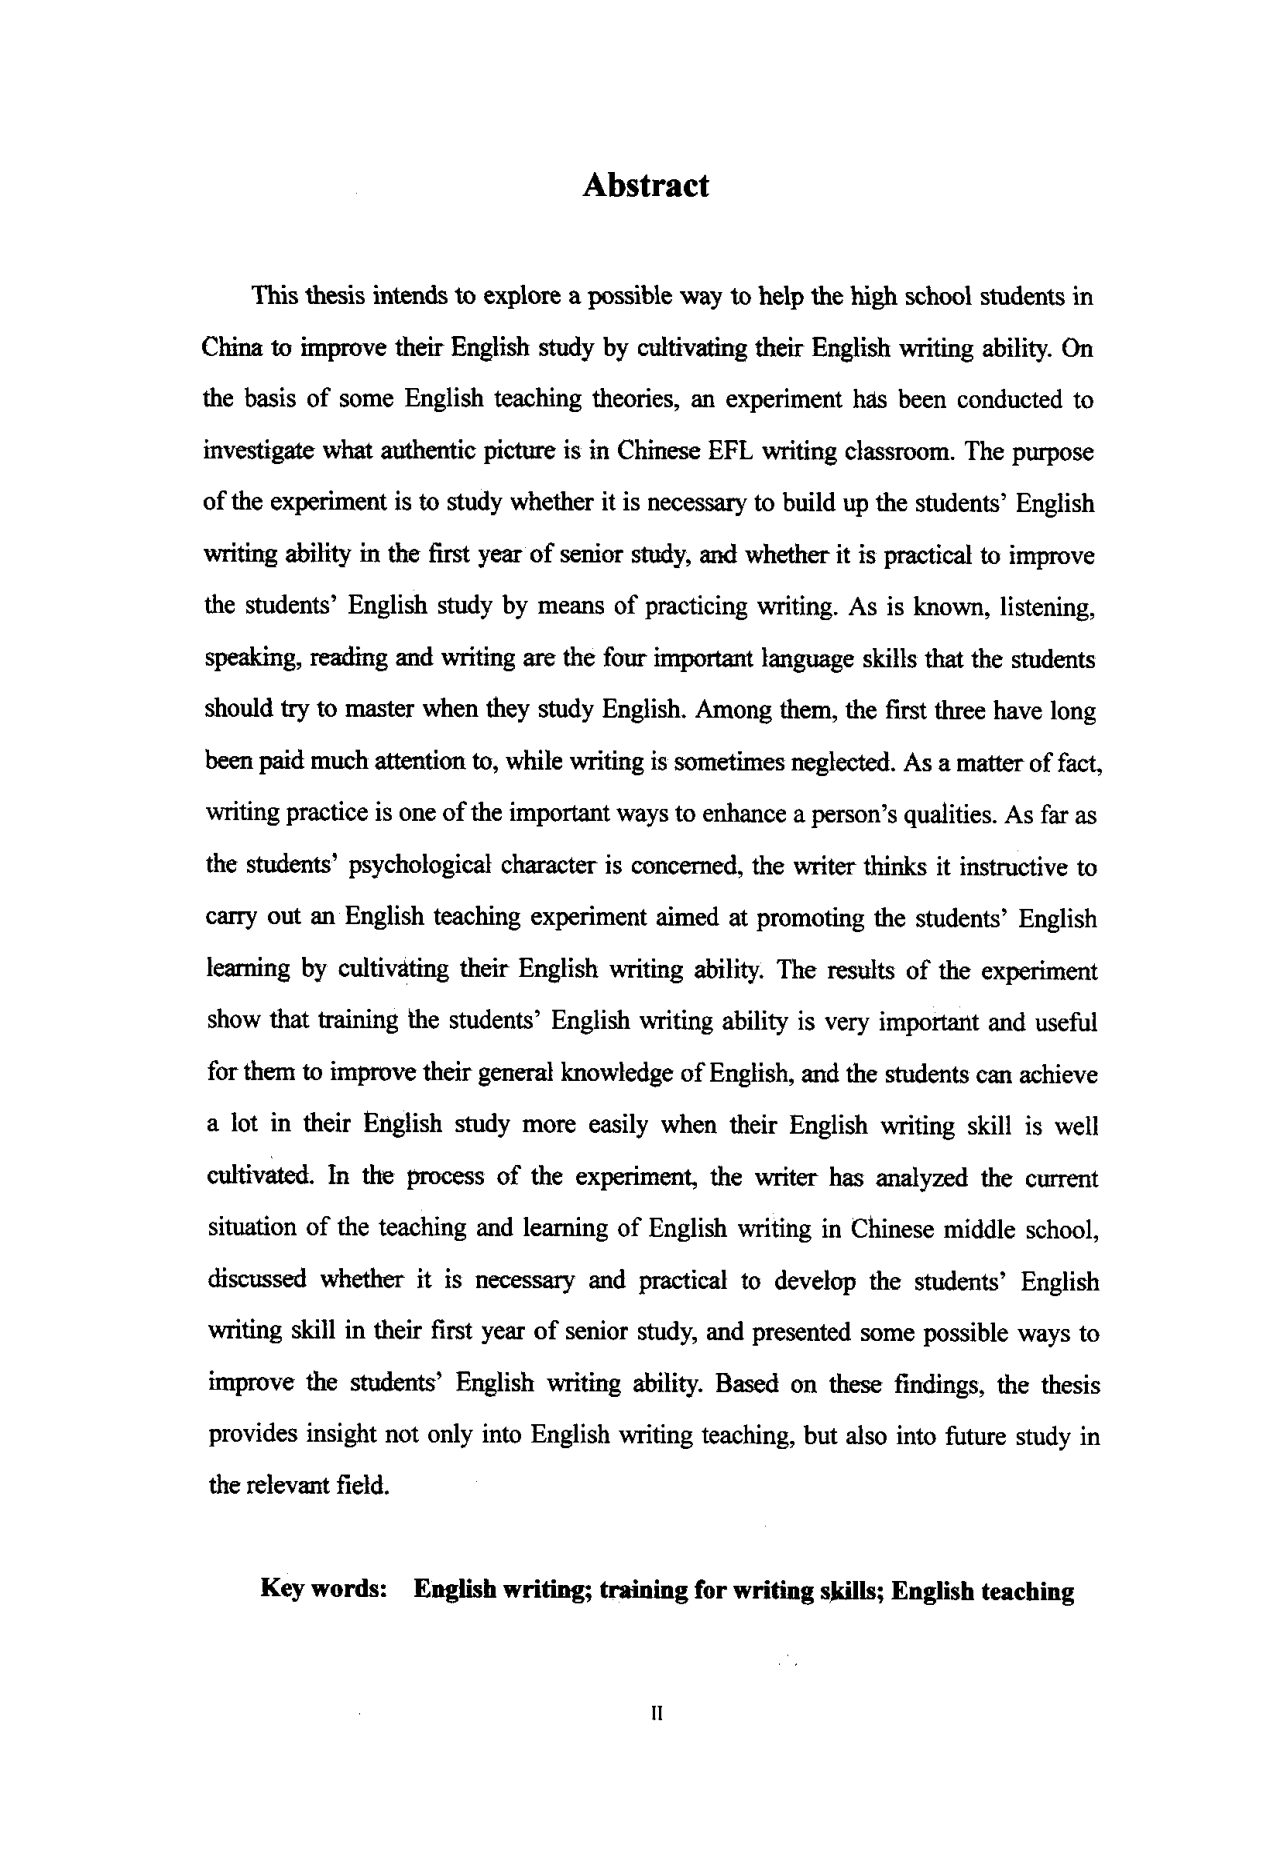 构建写作能力 开展以写促学——高中起始阶段英语教学的一项尝试